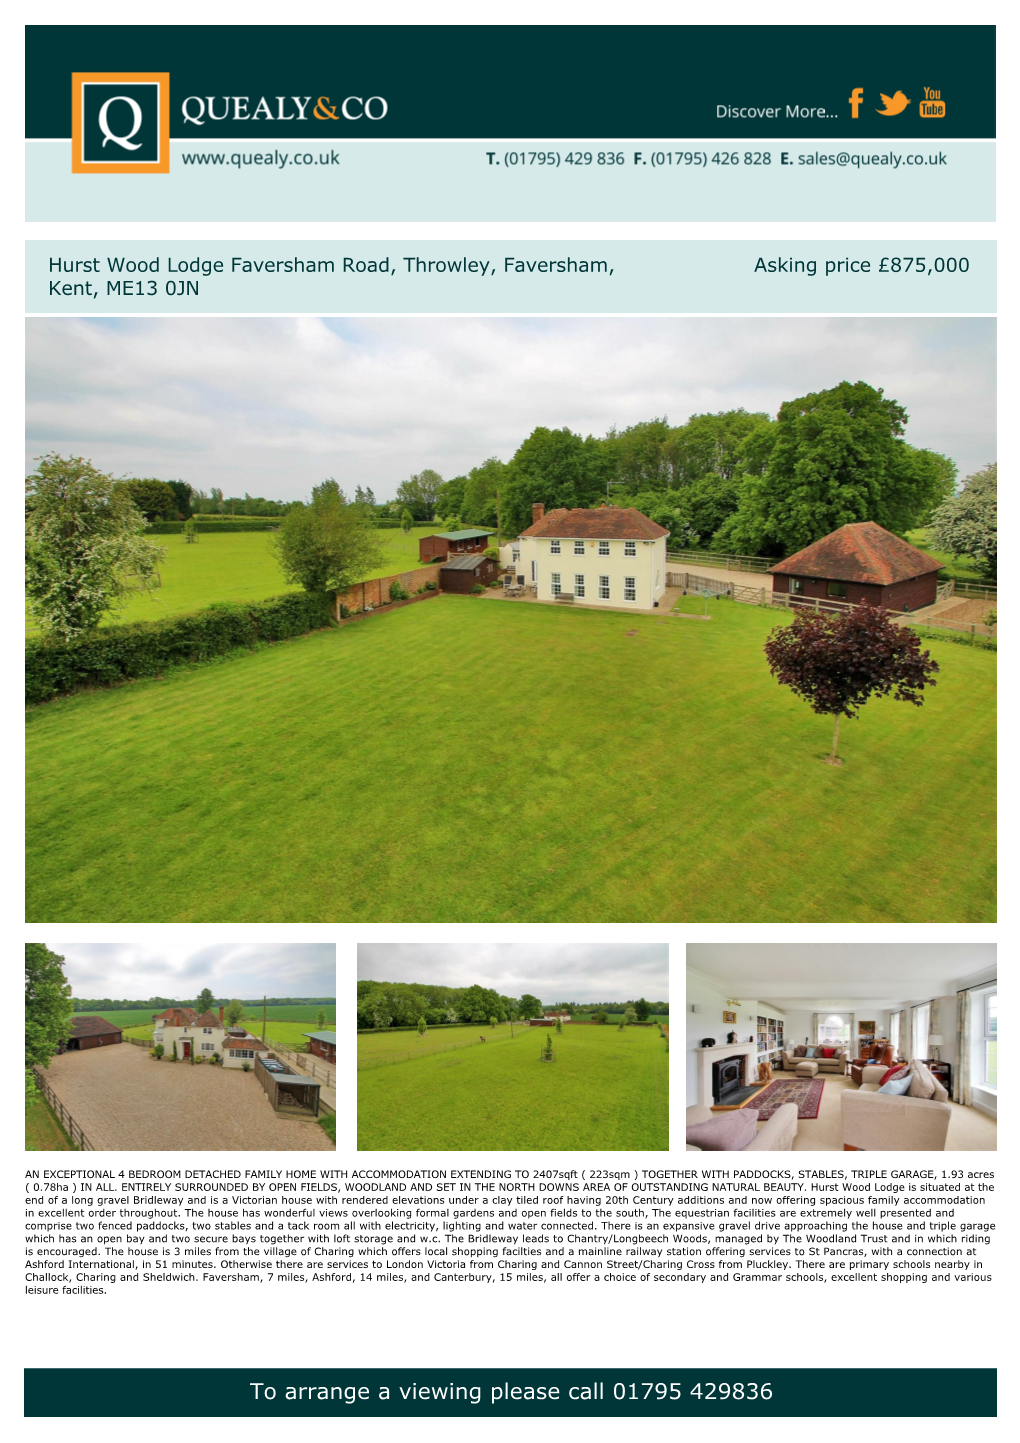 Hurst Wood Lodge Faversham Road, Throwley, Faversham, Kent, ME13 0JN Asking Price £875000